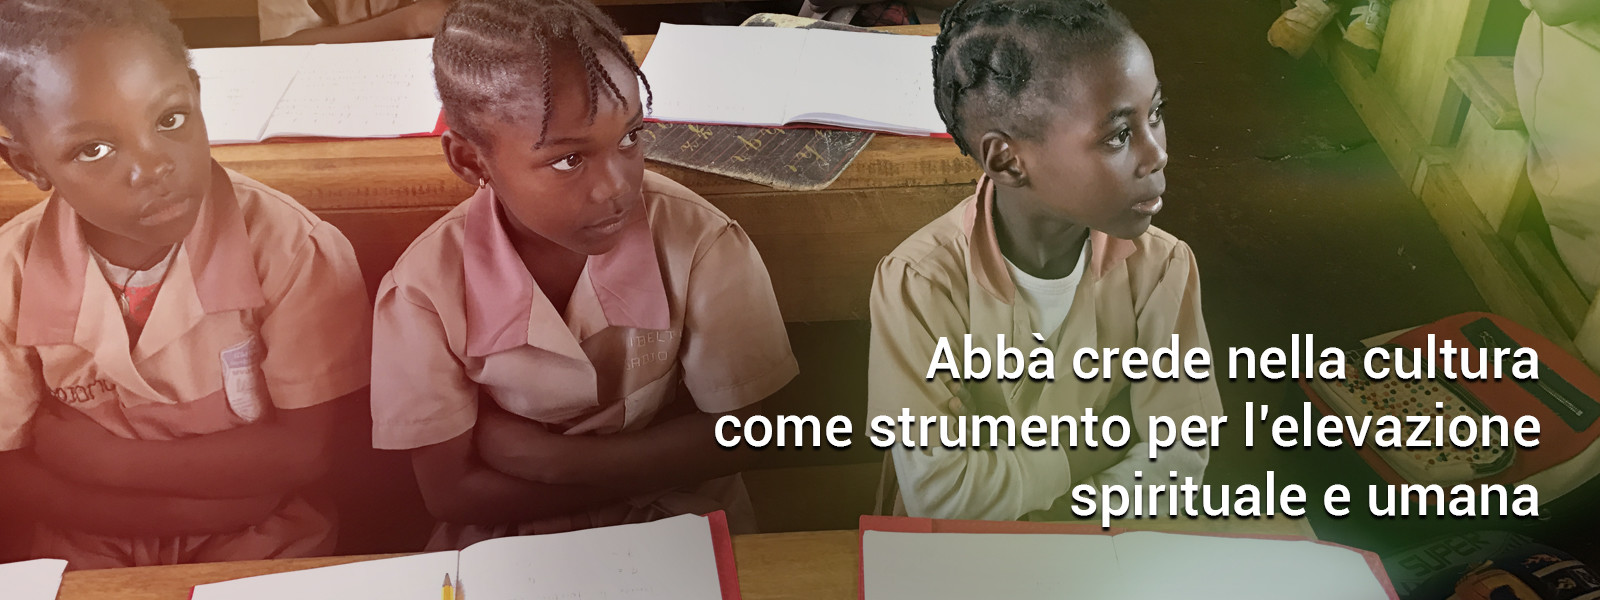 Abbà crede nella cultura come strumento per l’elevazione spirituale e umana